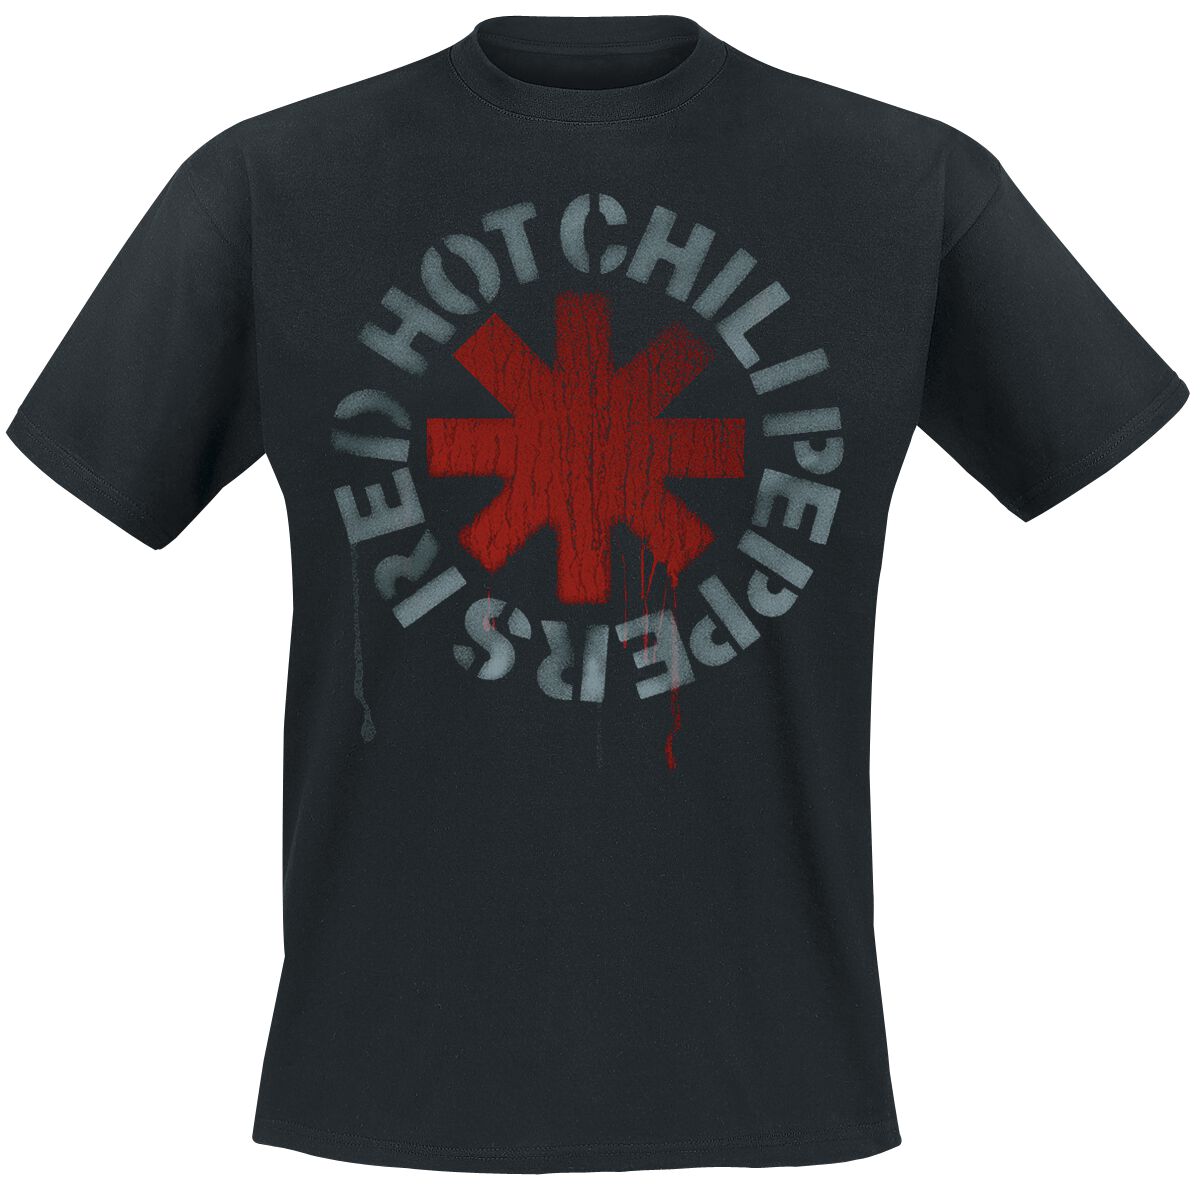 red hot chili peppers t-shirt - stencil black - s bis 5xl - fÃ¼r mÃ¤nner - grÃ¶ÃŸe 4xl - - lizenziertes merchandise! schwarz